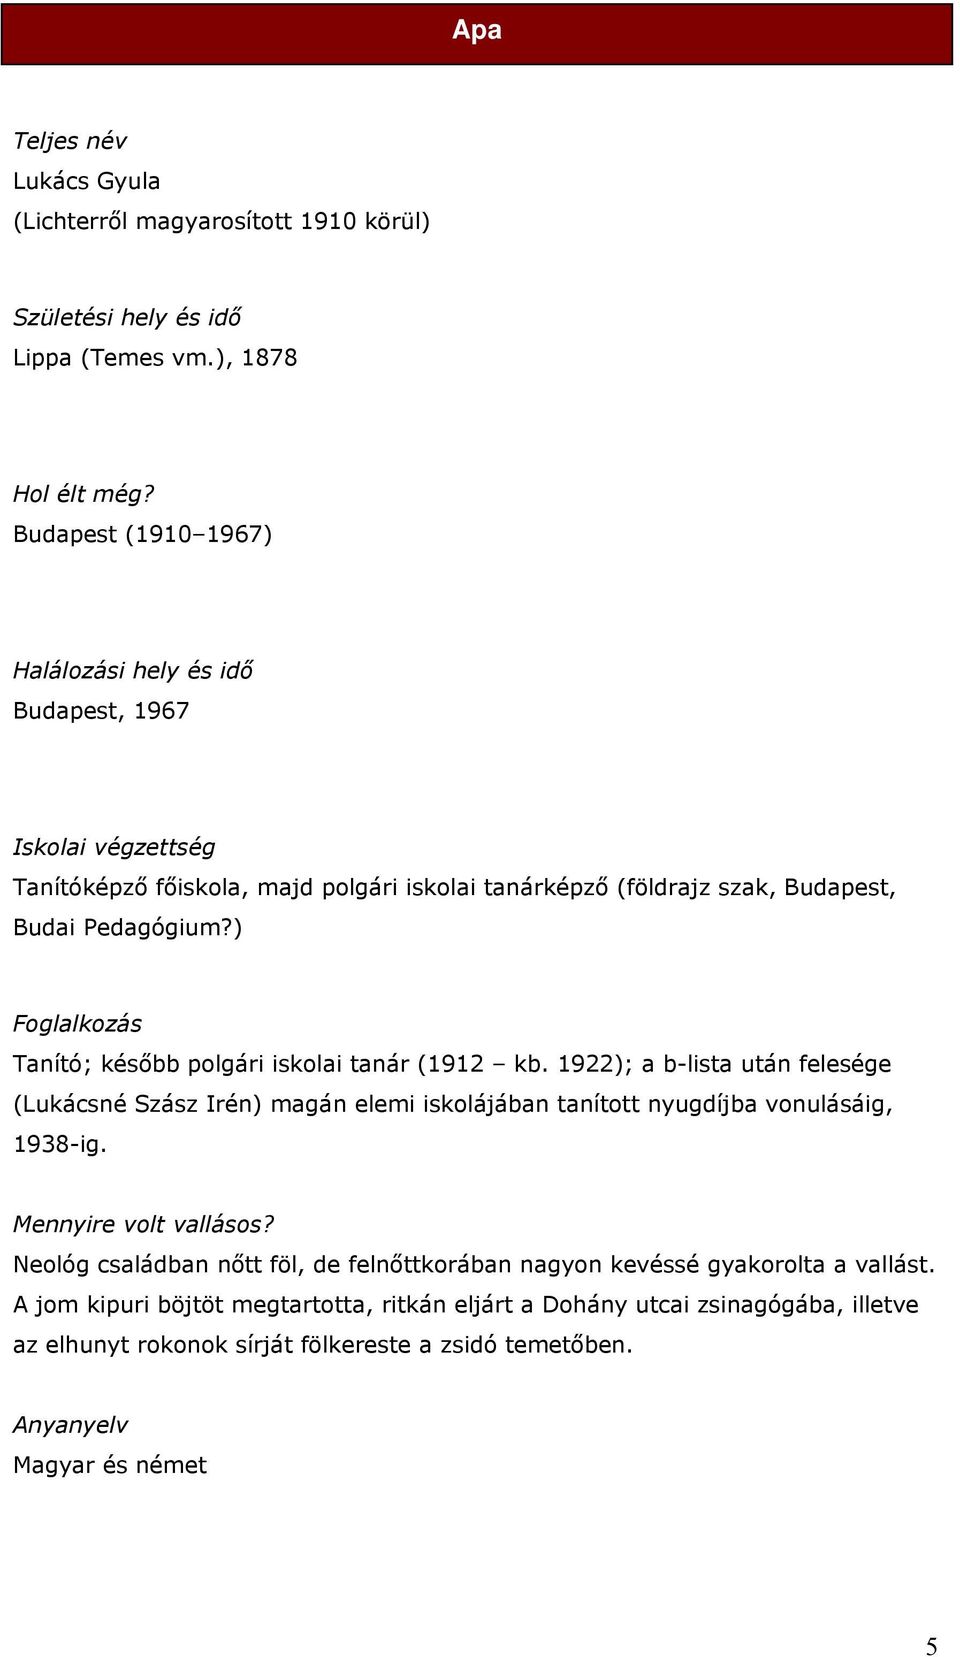 ) Foglalkozás Tanító; később polgári iskolai tanár (1912 kb. 1922); a b-lista után felesége (Lukácsné Szász Irén) magán elemi iskolájában tanított nyugdíjba vonulásáig, 1938-ig.